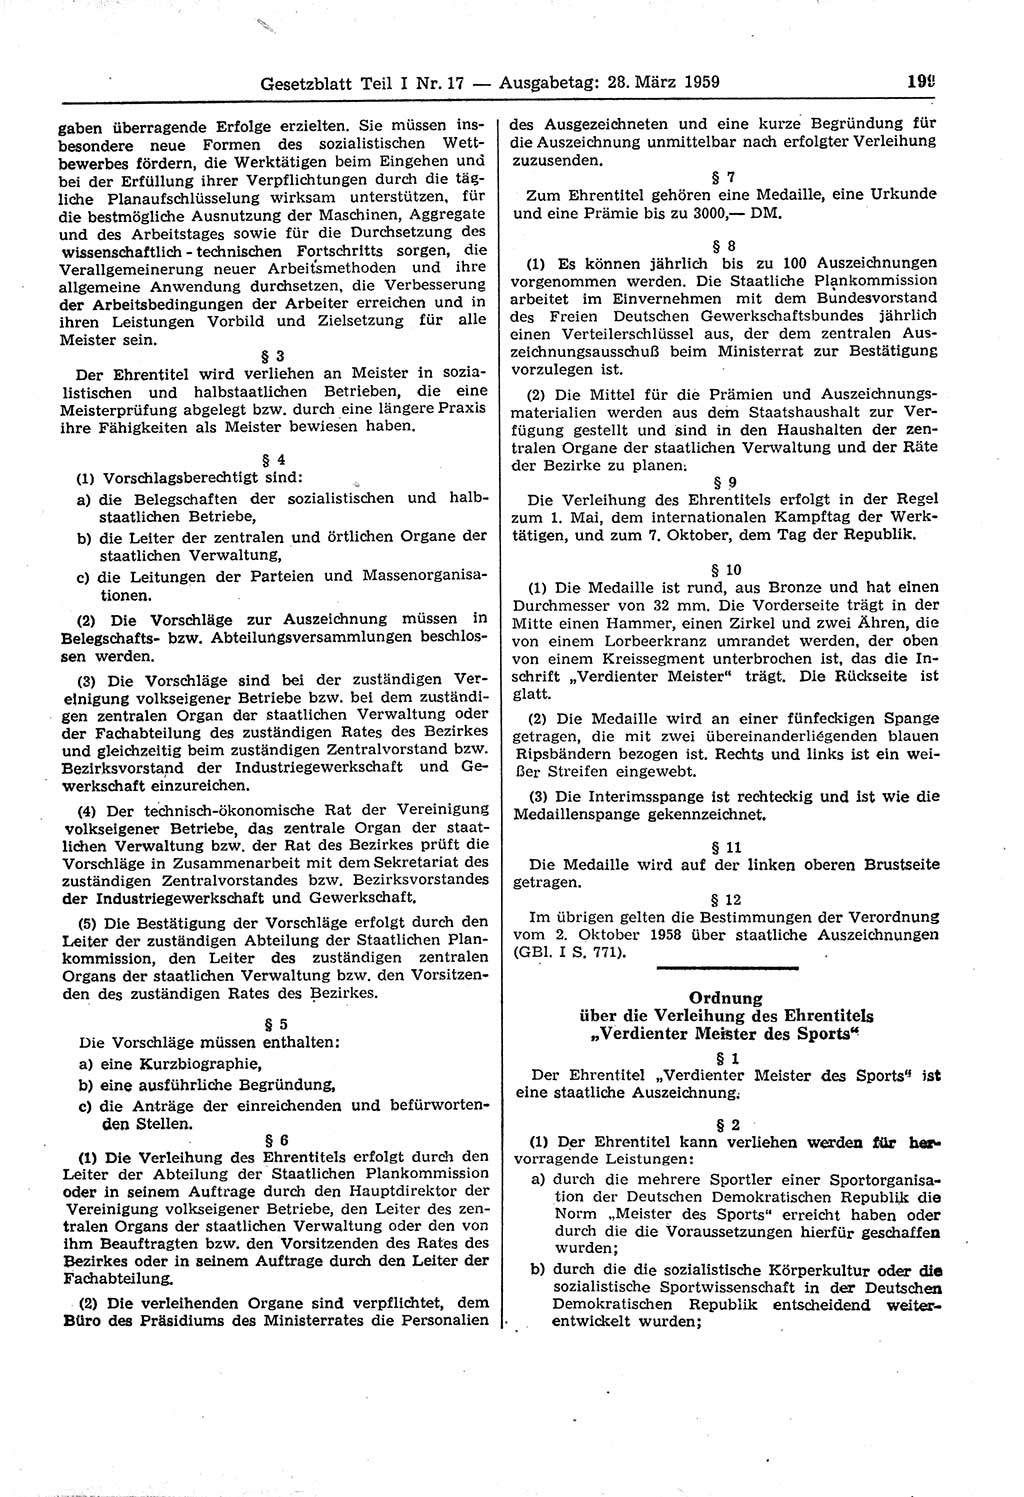 Gesetzblatt (GBl.) der Deutschen Demokratischen Republik (DDR) Teil Ⅰ 1959, Seite 199 (GBl. DDR Ⅰ 1959, S. 199)